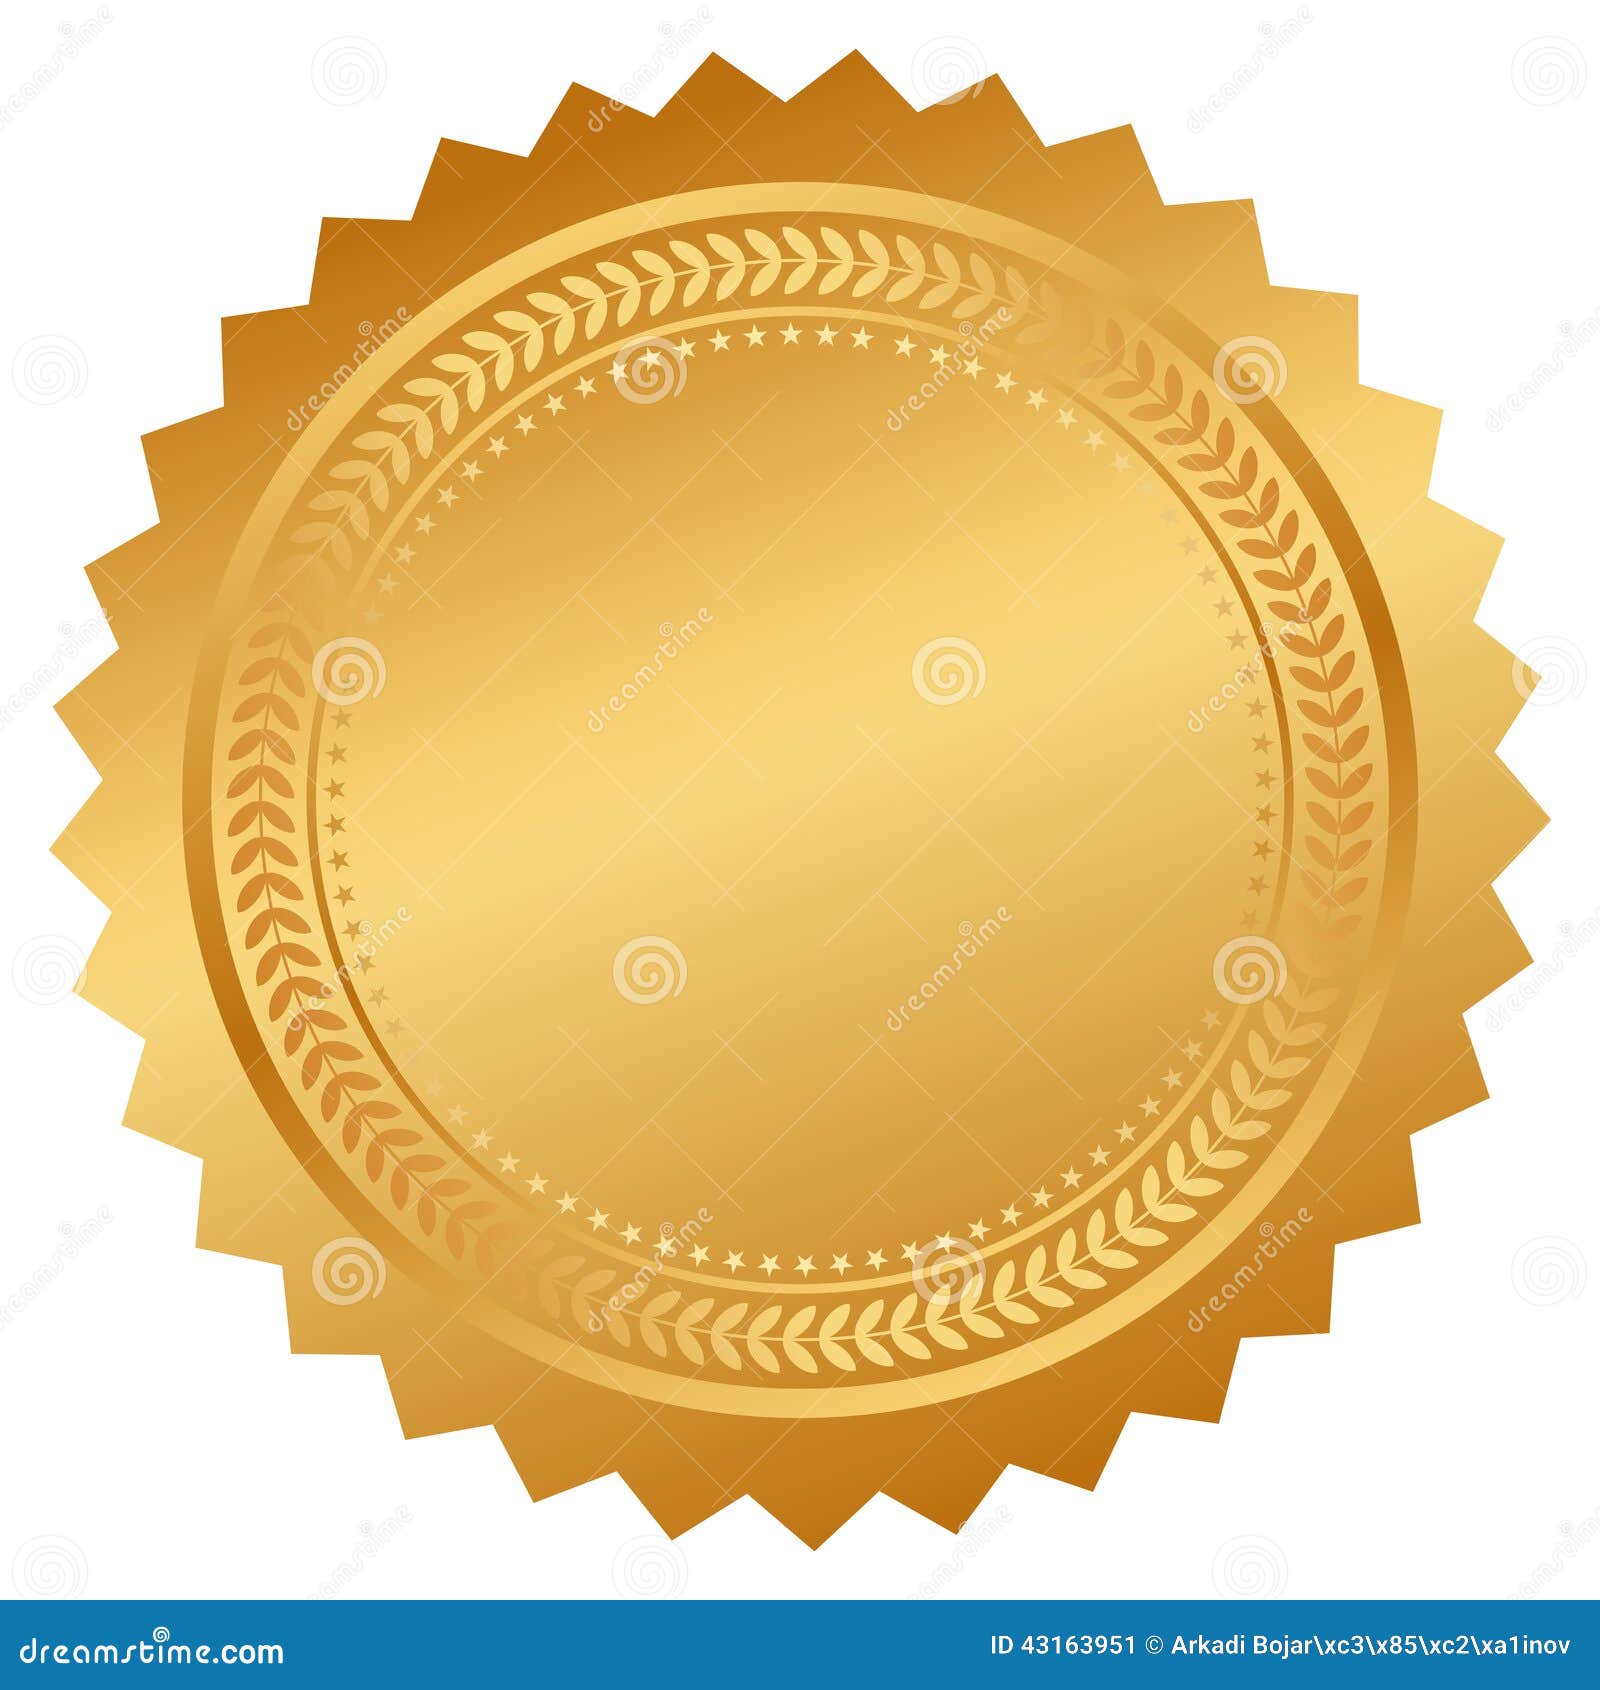  seal certificate